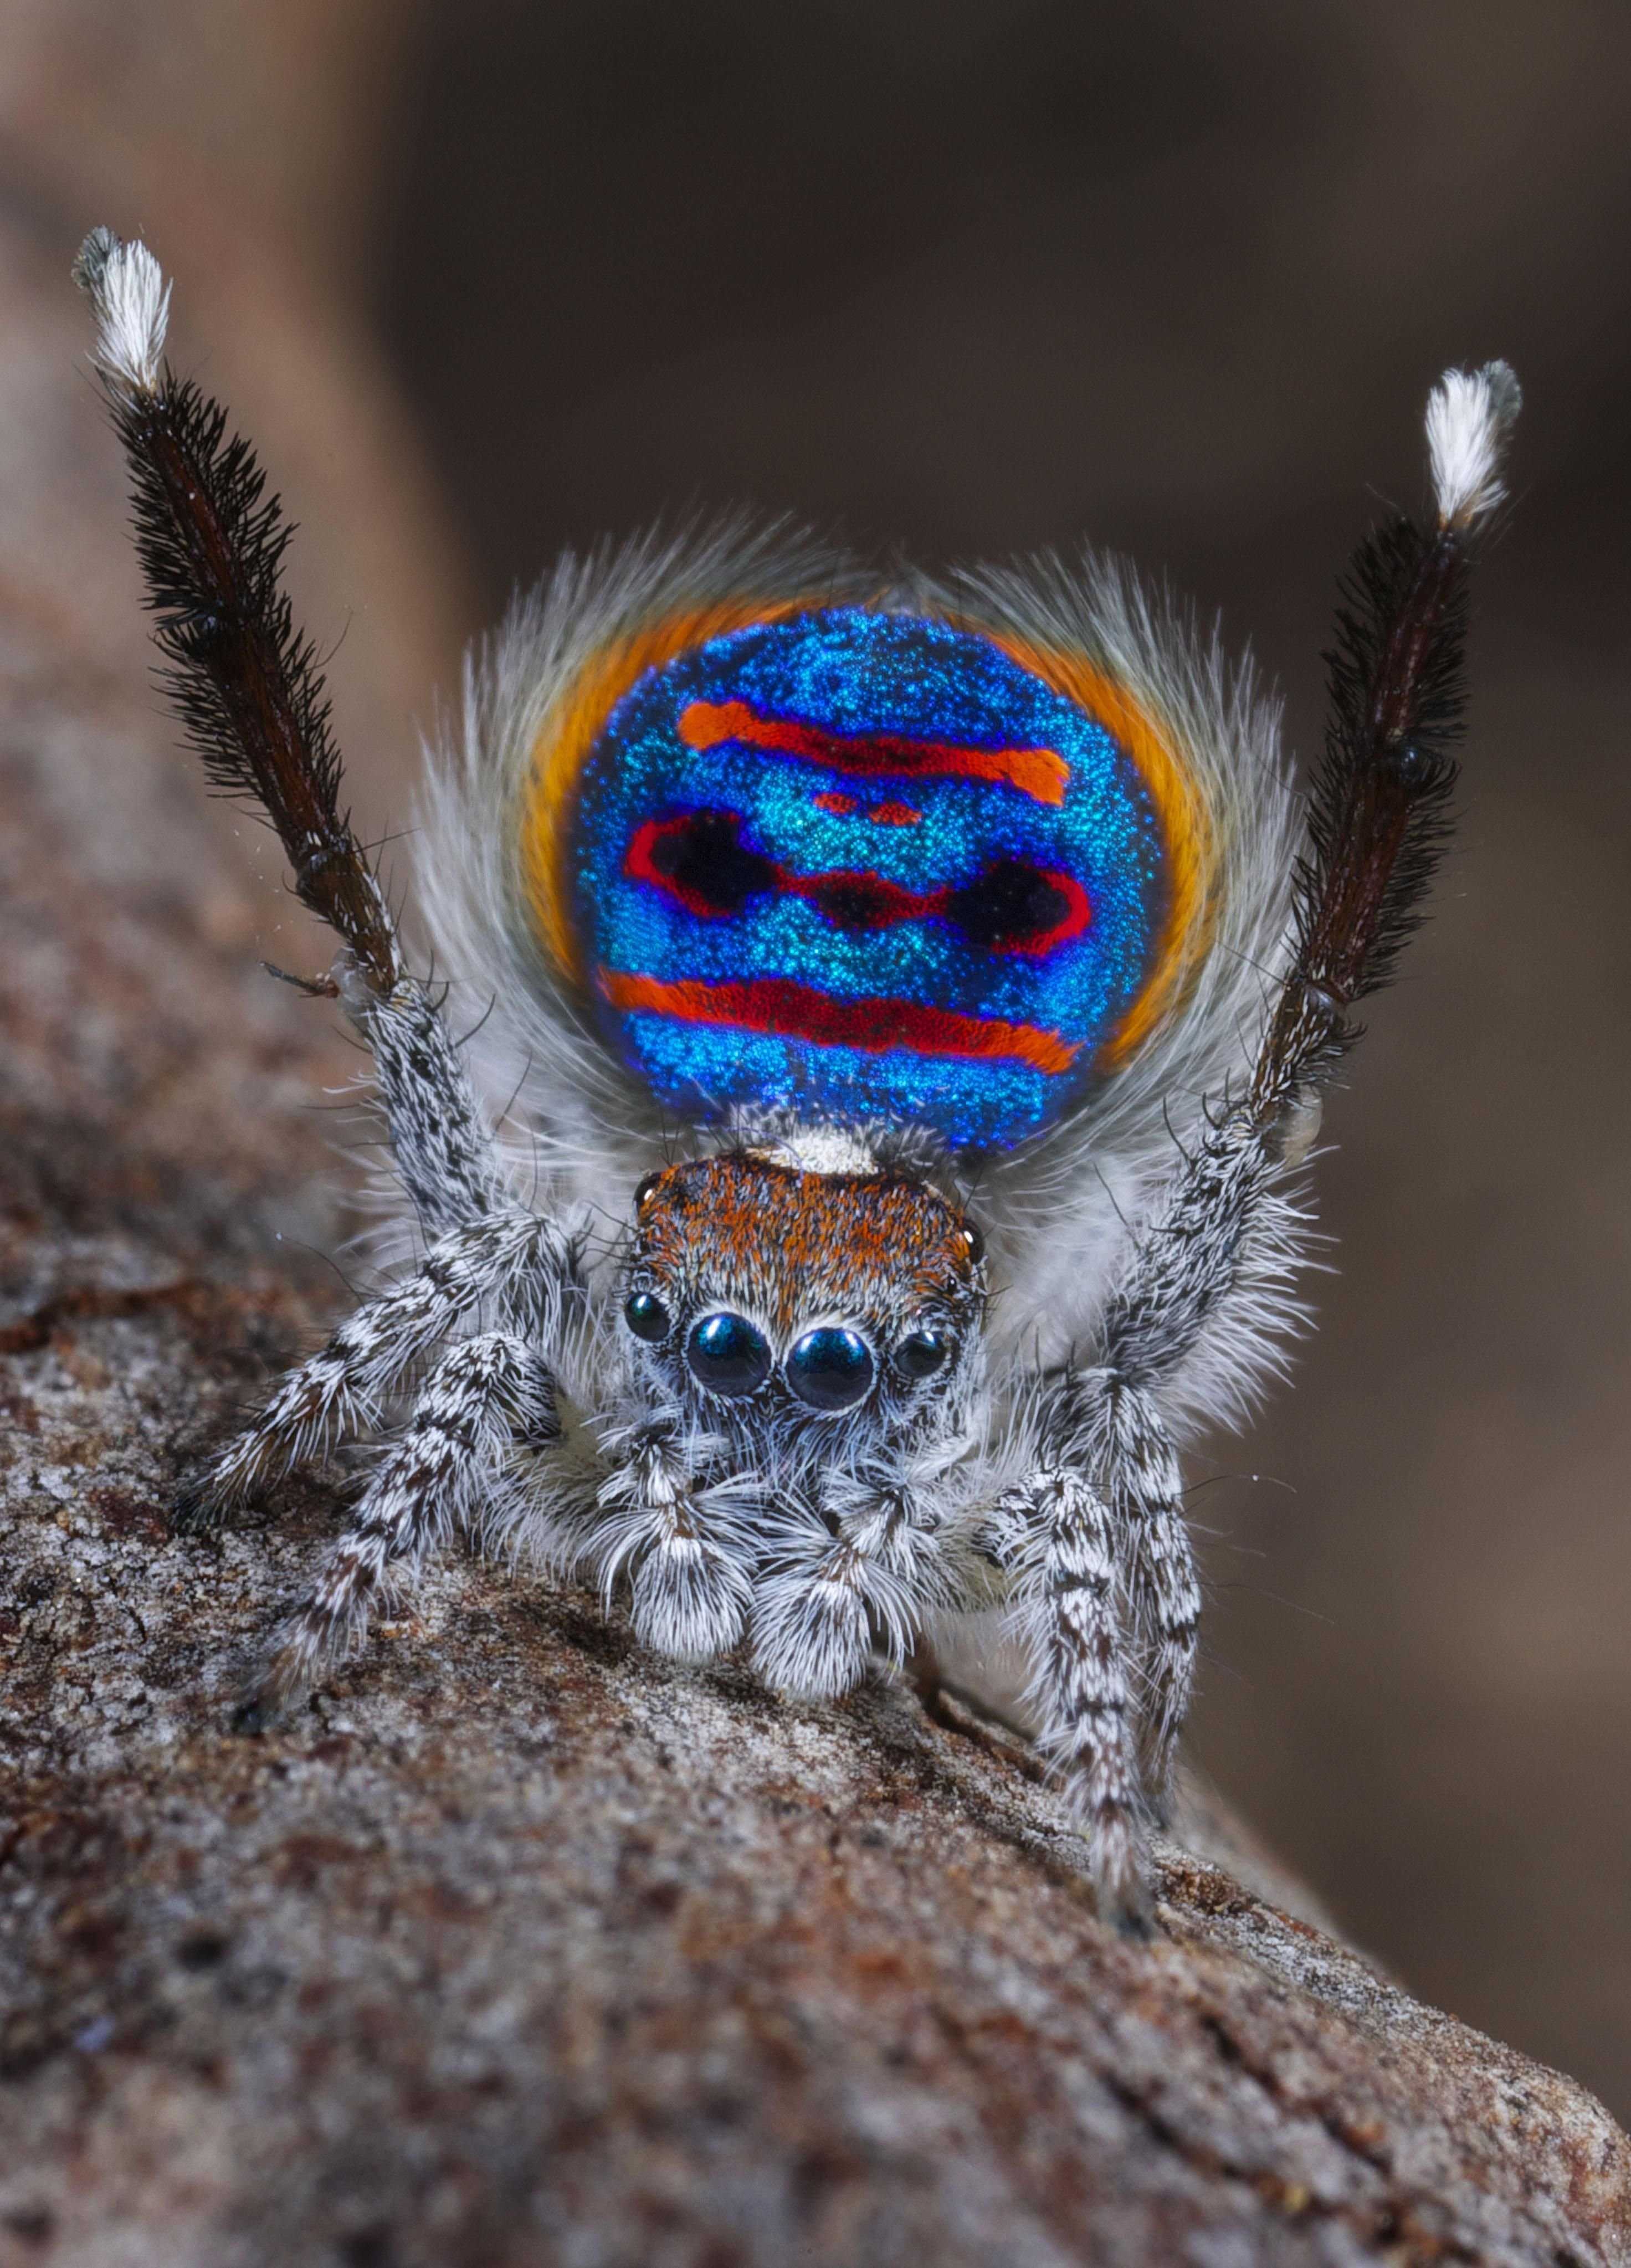 Самые красивые и милые пауки в мире — фото, названия и описание. топ самые красивые пауки в мире